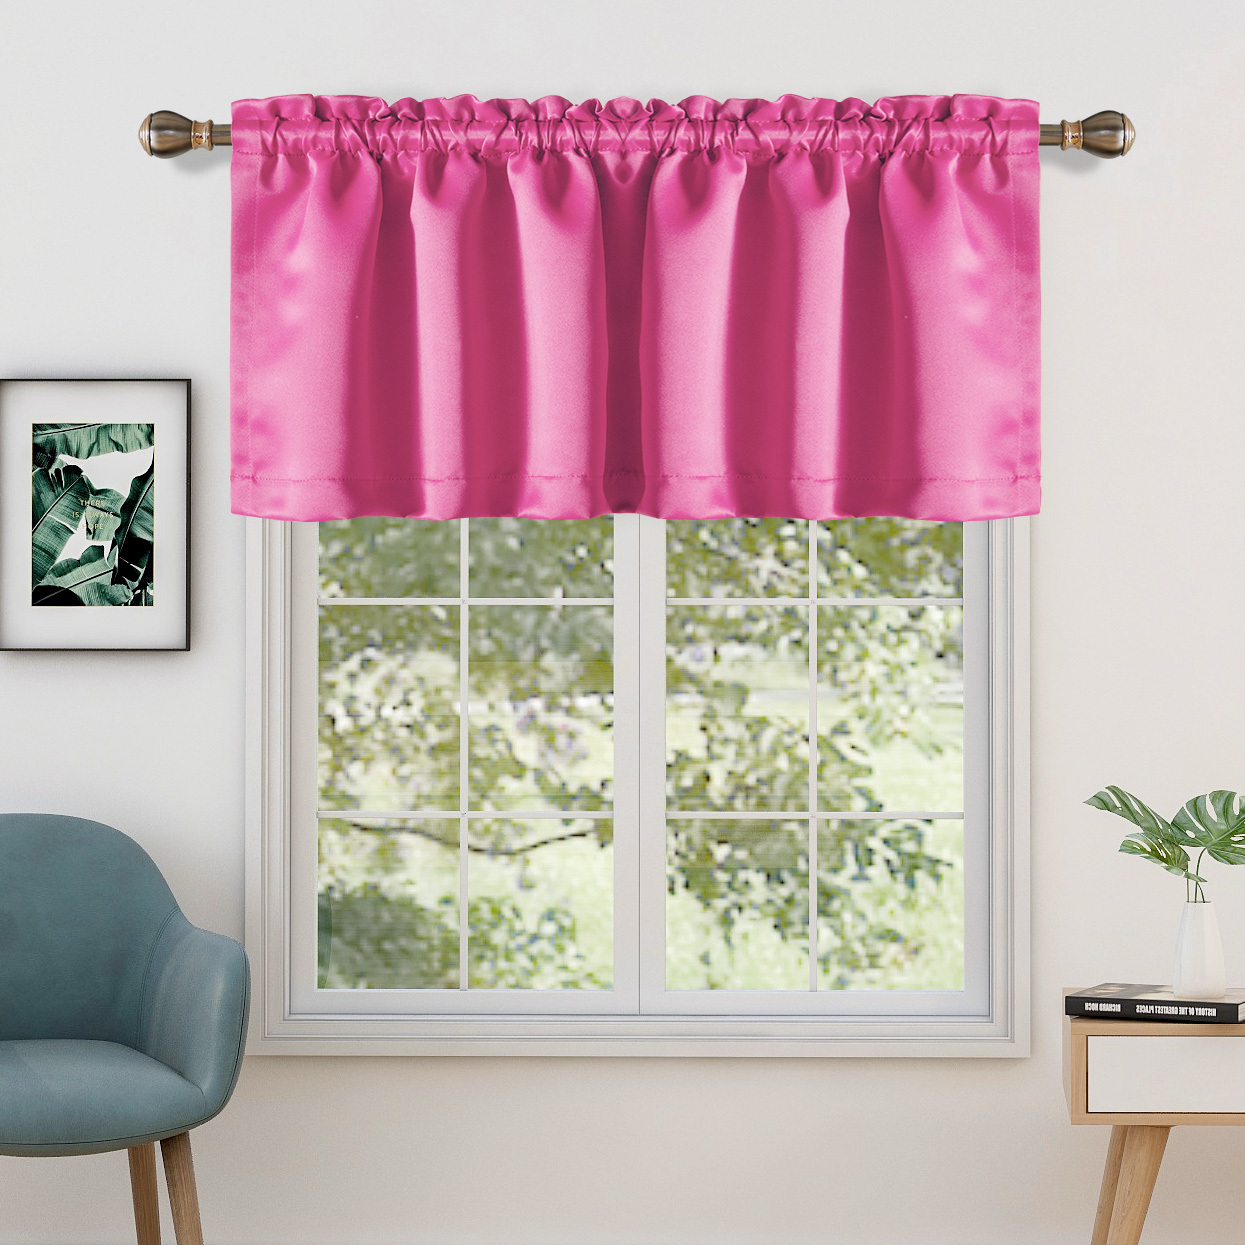 cortina de ventana de baño corto cortinas transparentes tul corto cortinas  ventana cenefa para baño sala de estar #0219y10